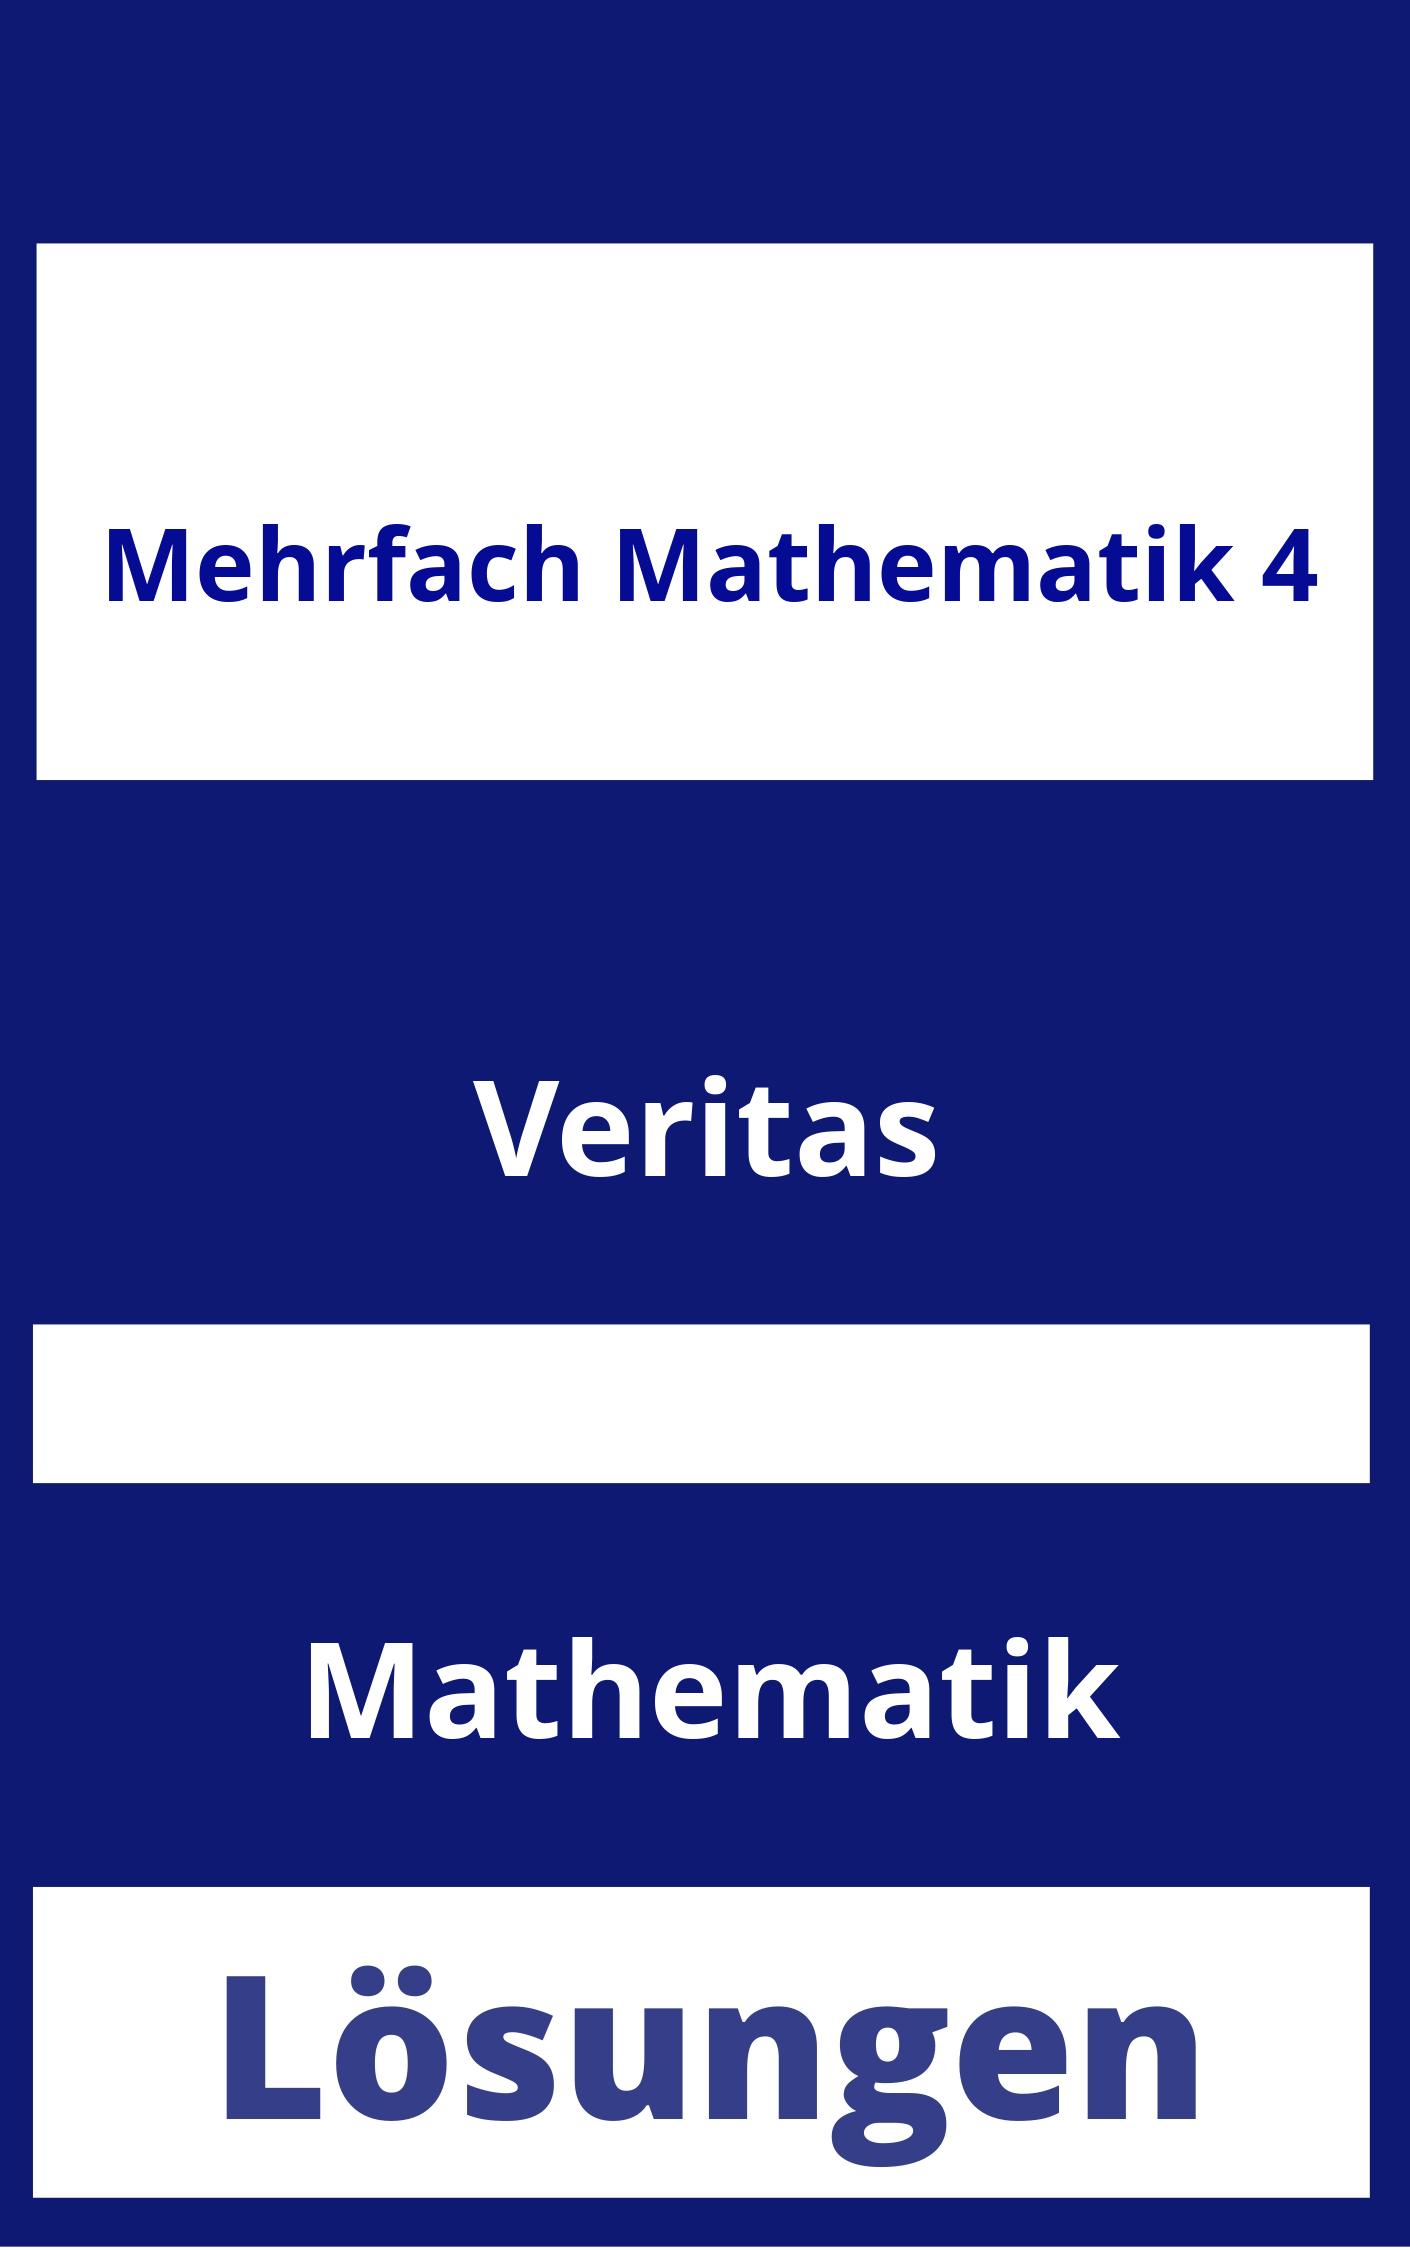 MEHRfach Mathematik 4 Lösungen PDF